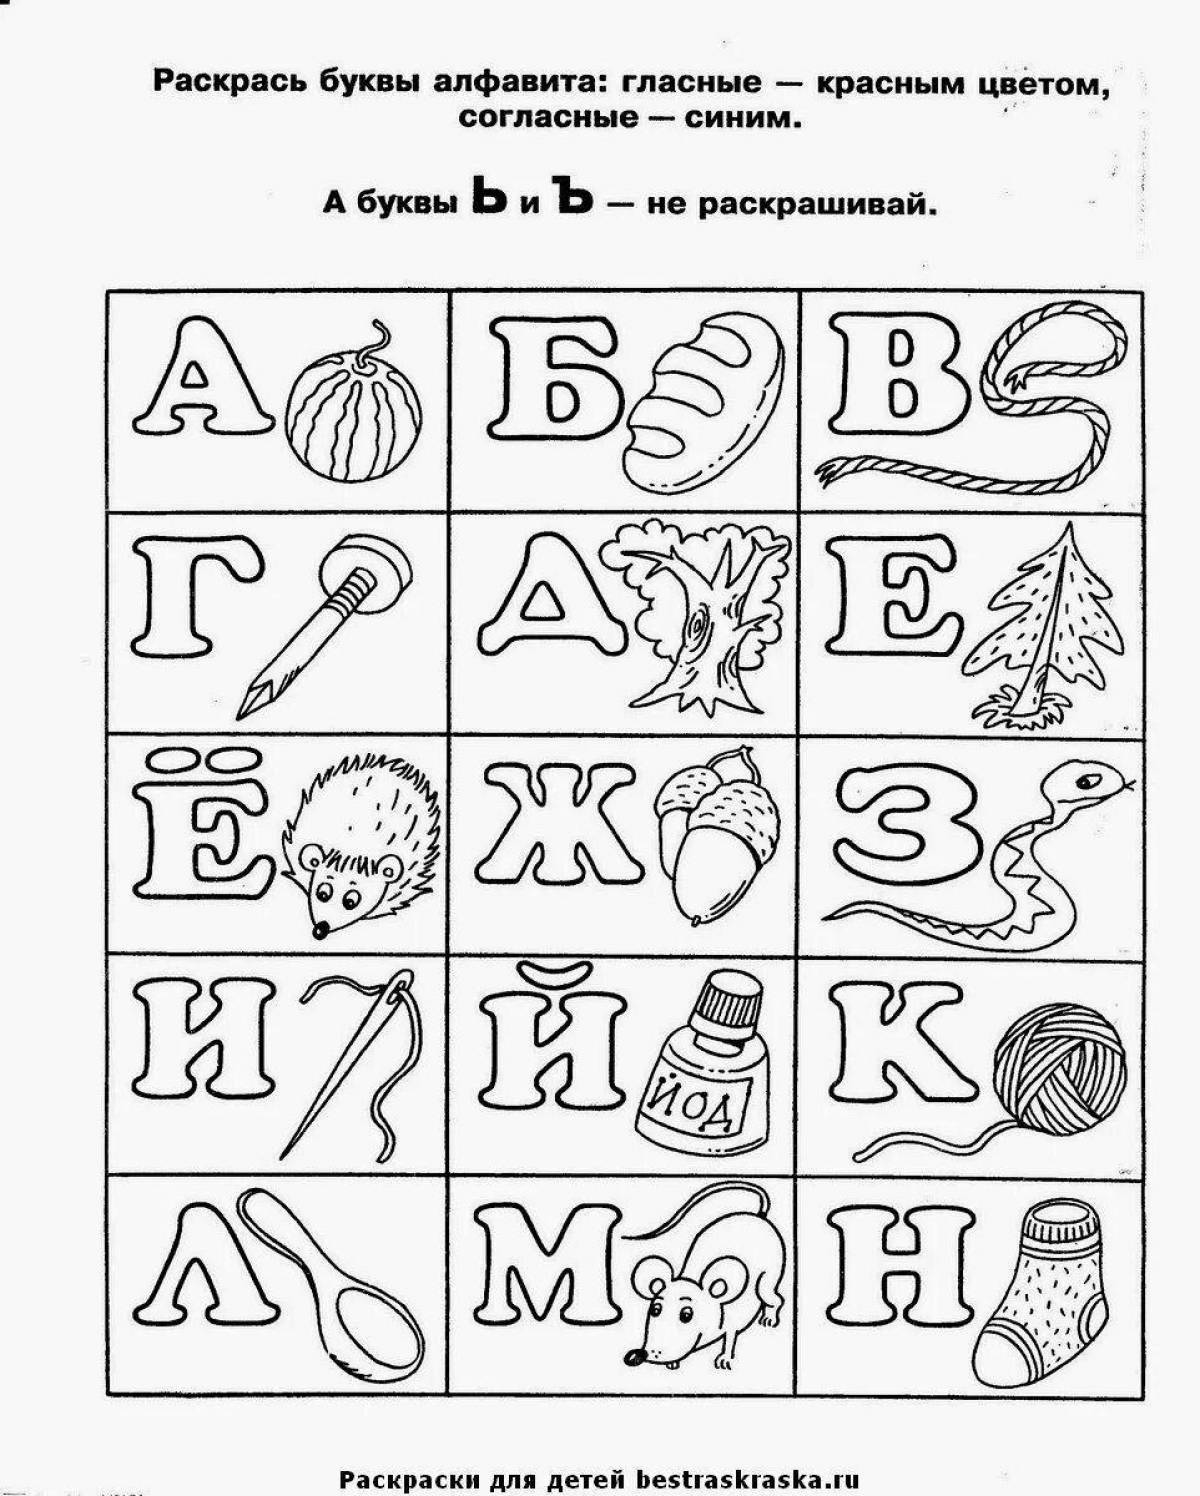 Русский алфавит #9